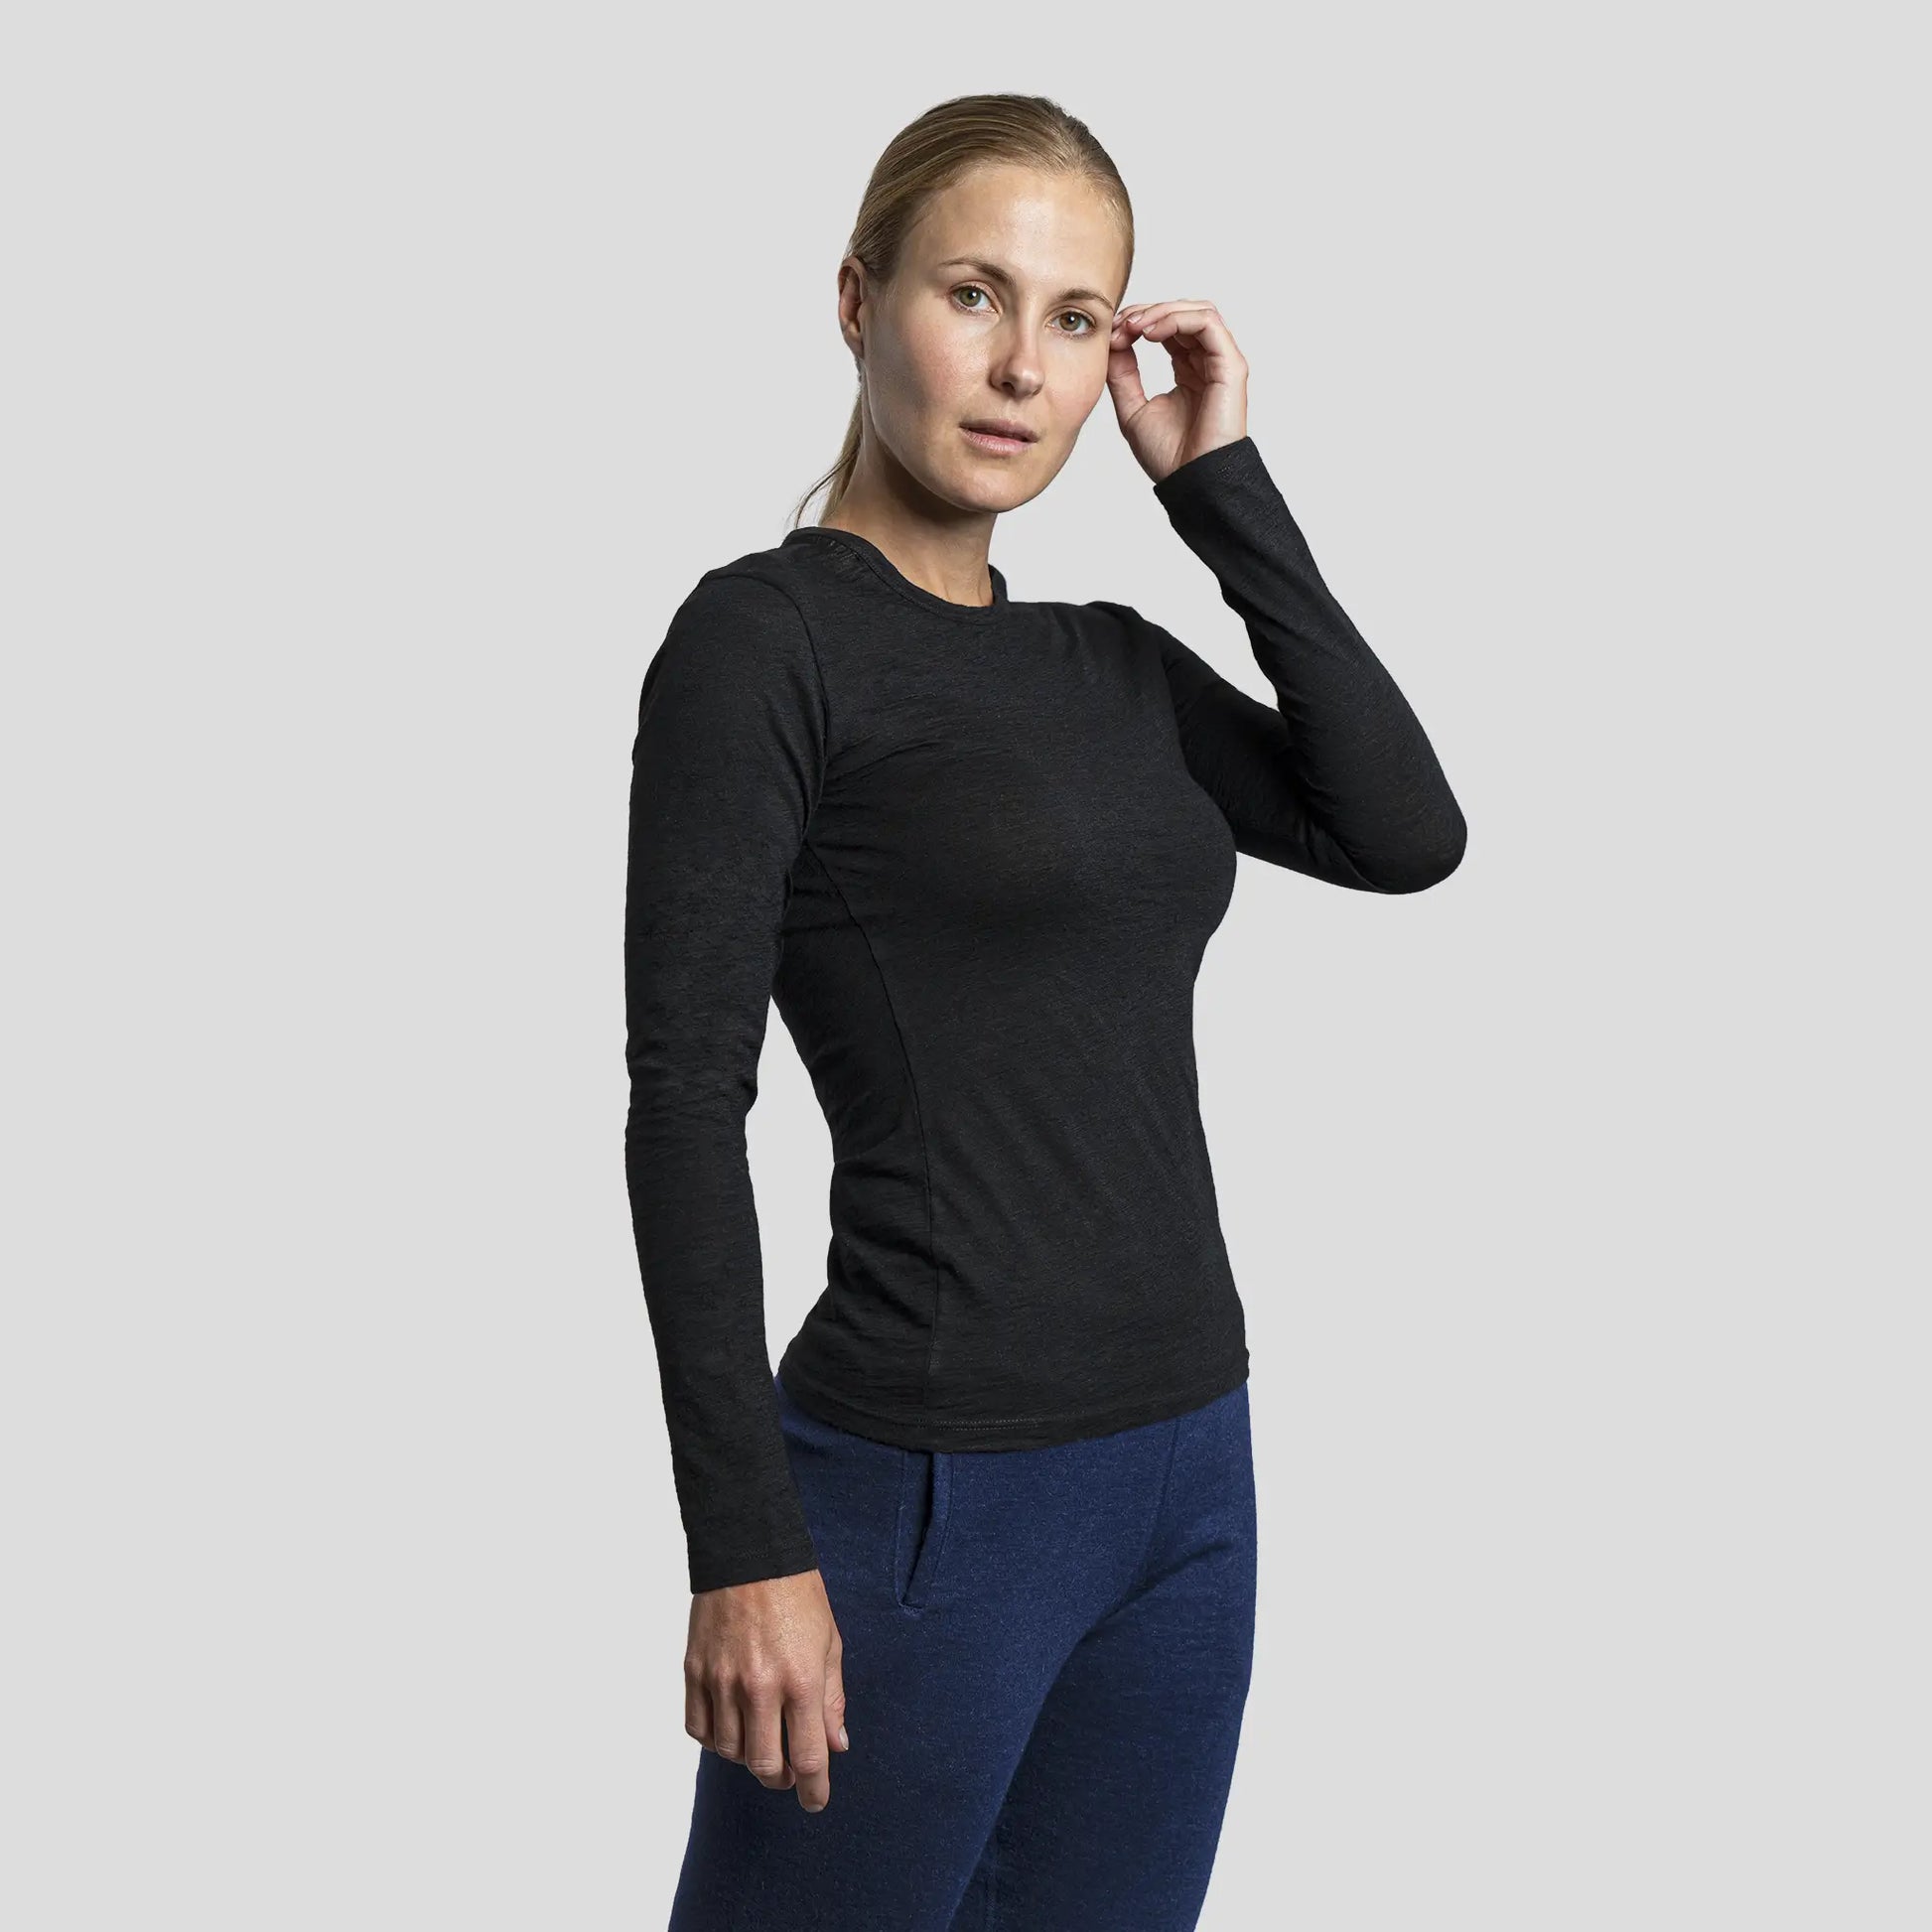 Long Sleeve Shirts Women, Women's Base Layer